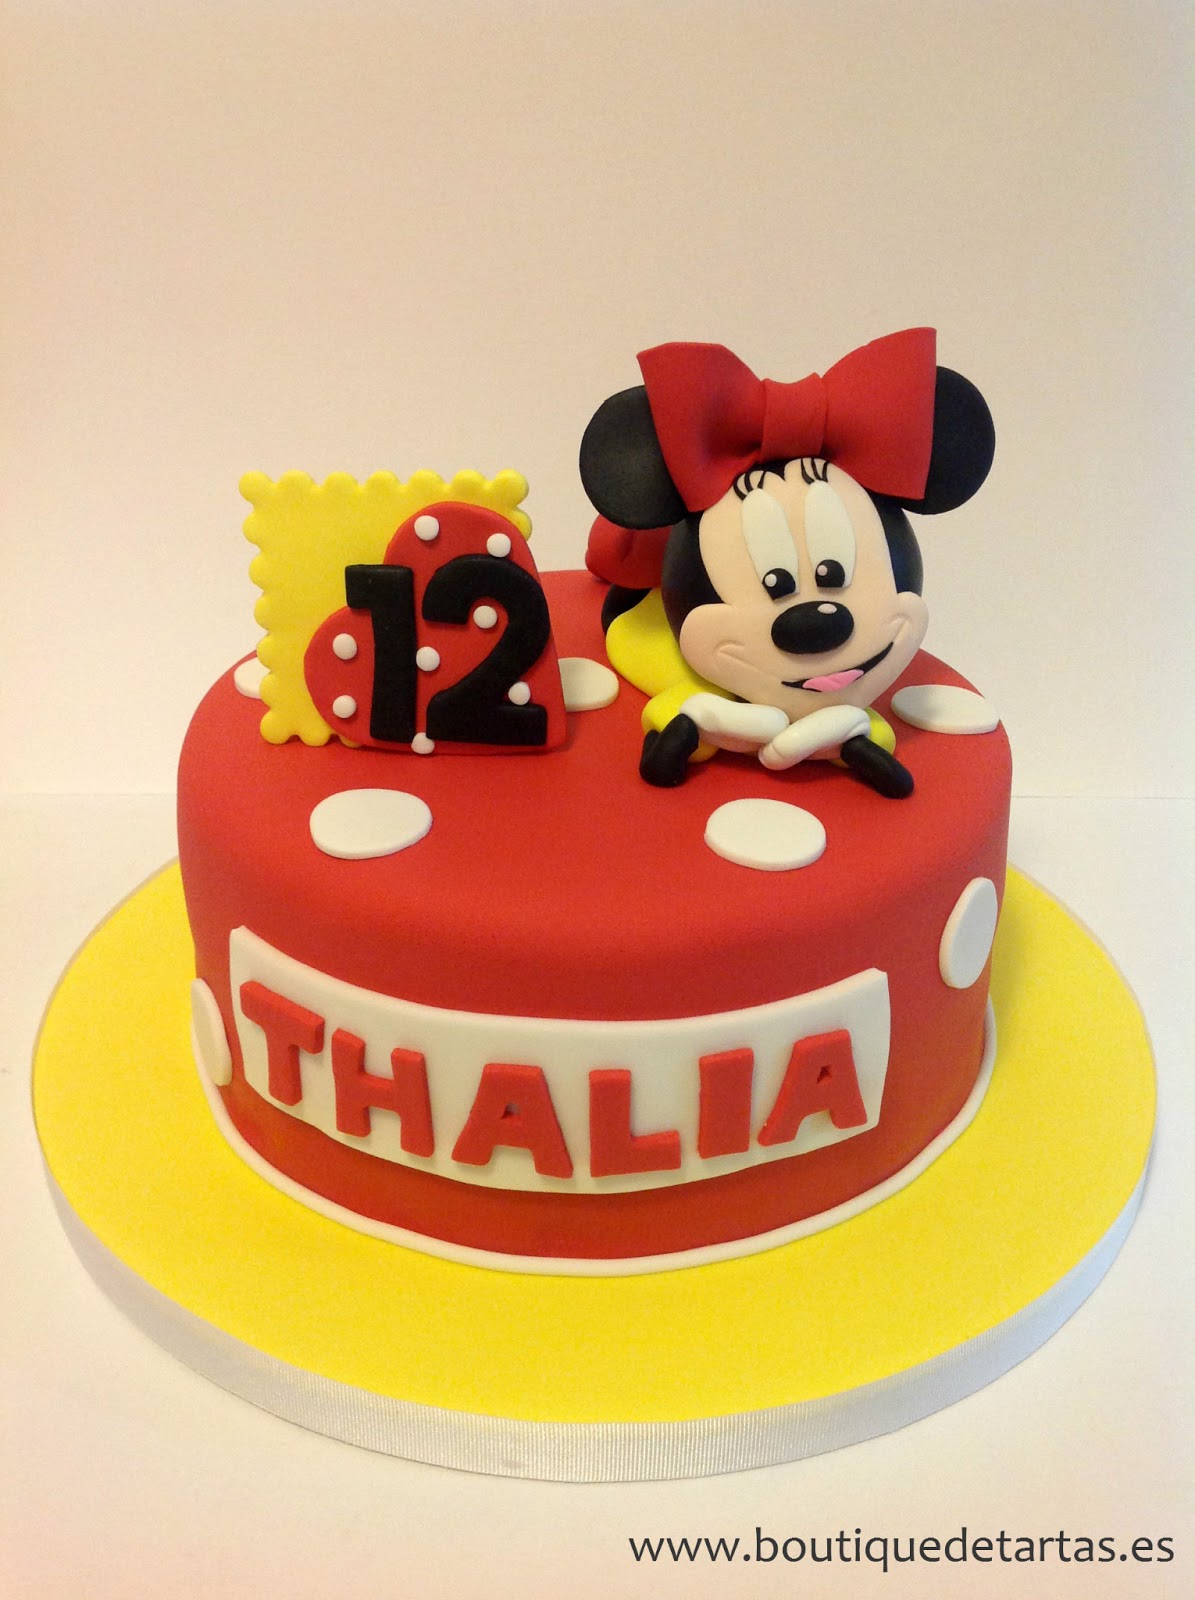 La boutique de las tartas - Cake Design: Tarta Minnie Mouse en rojo